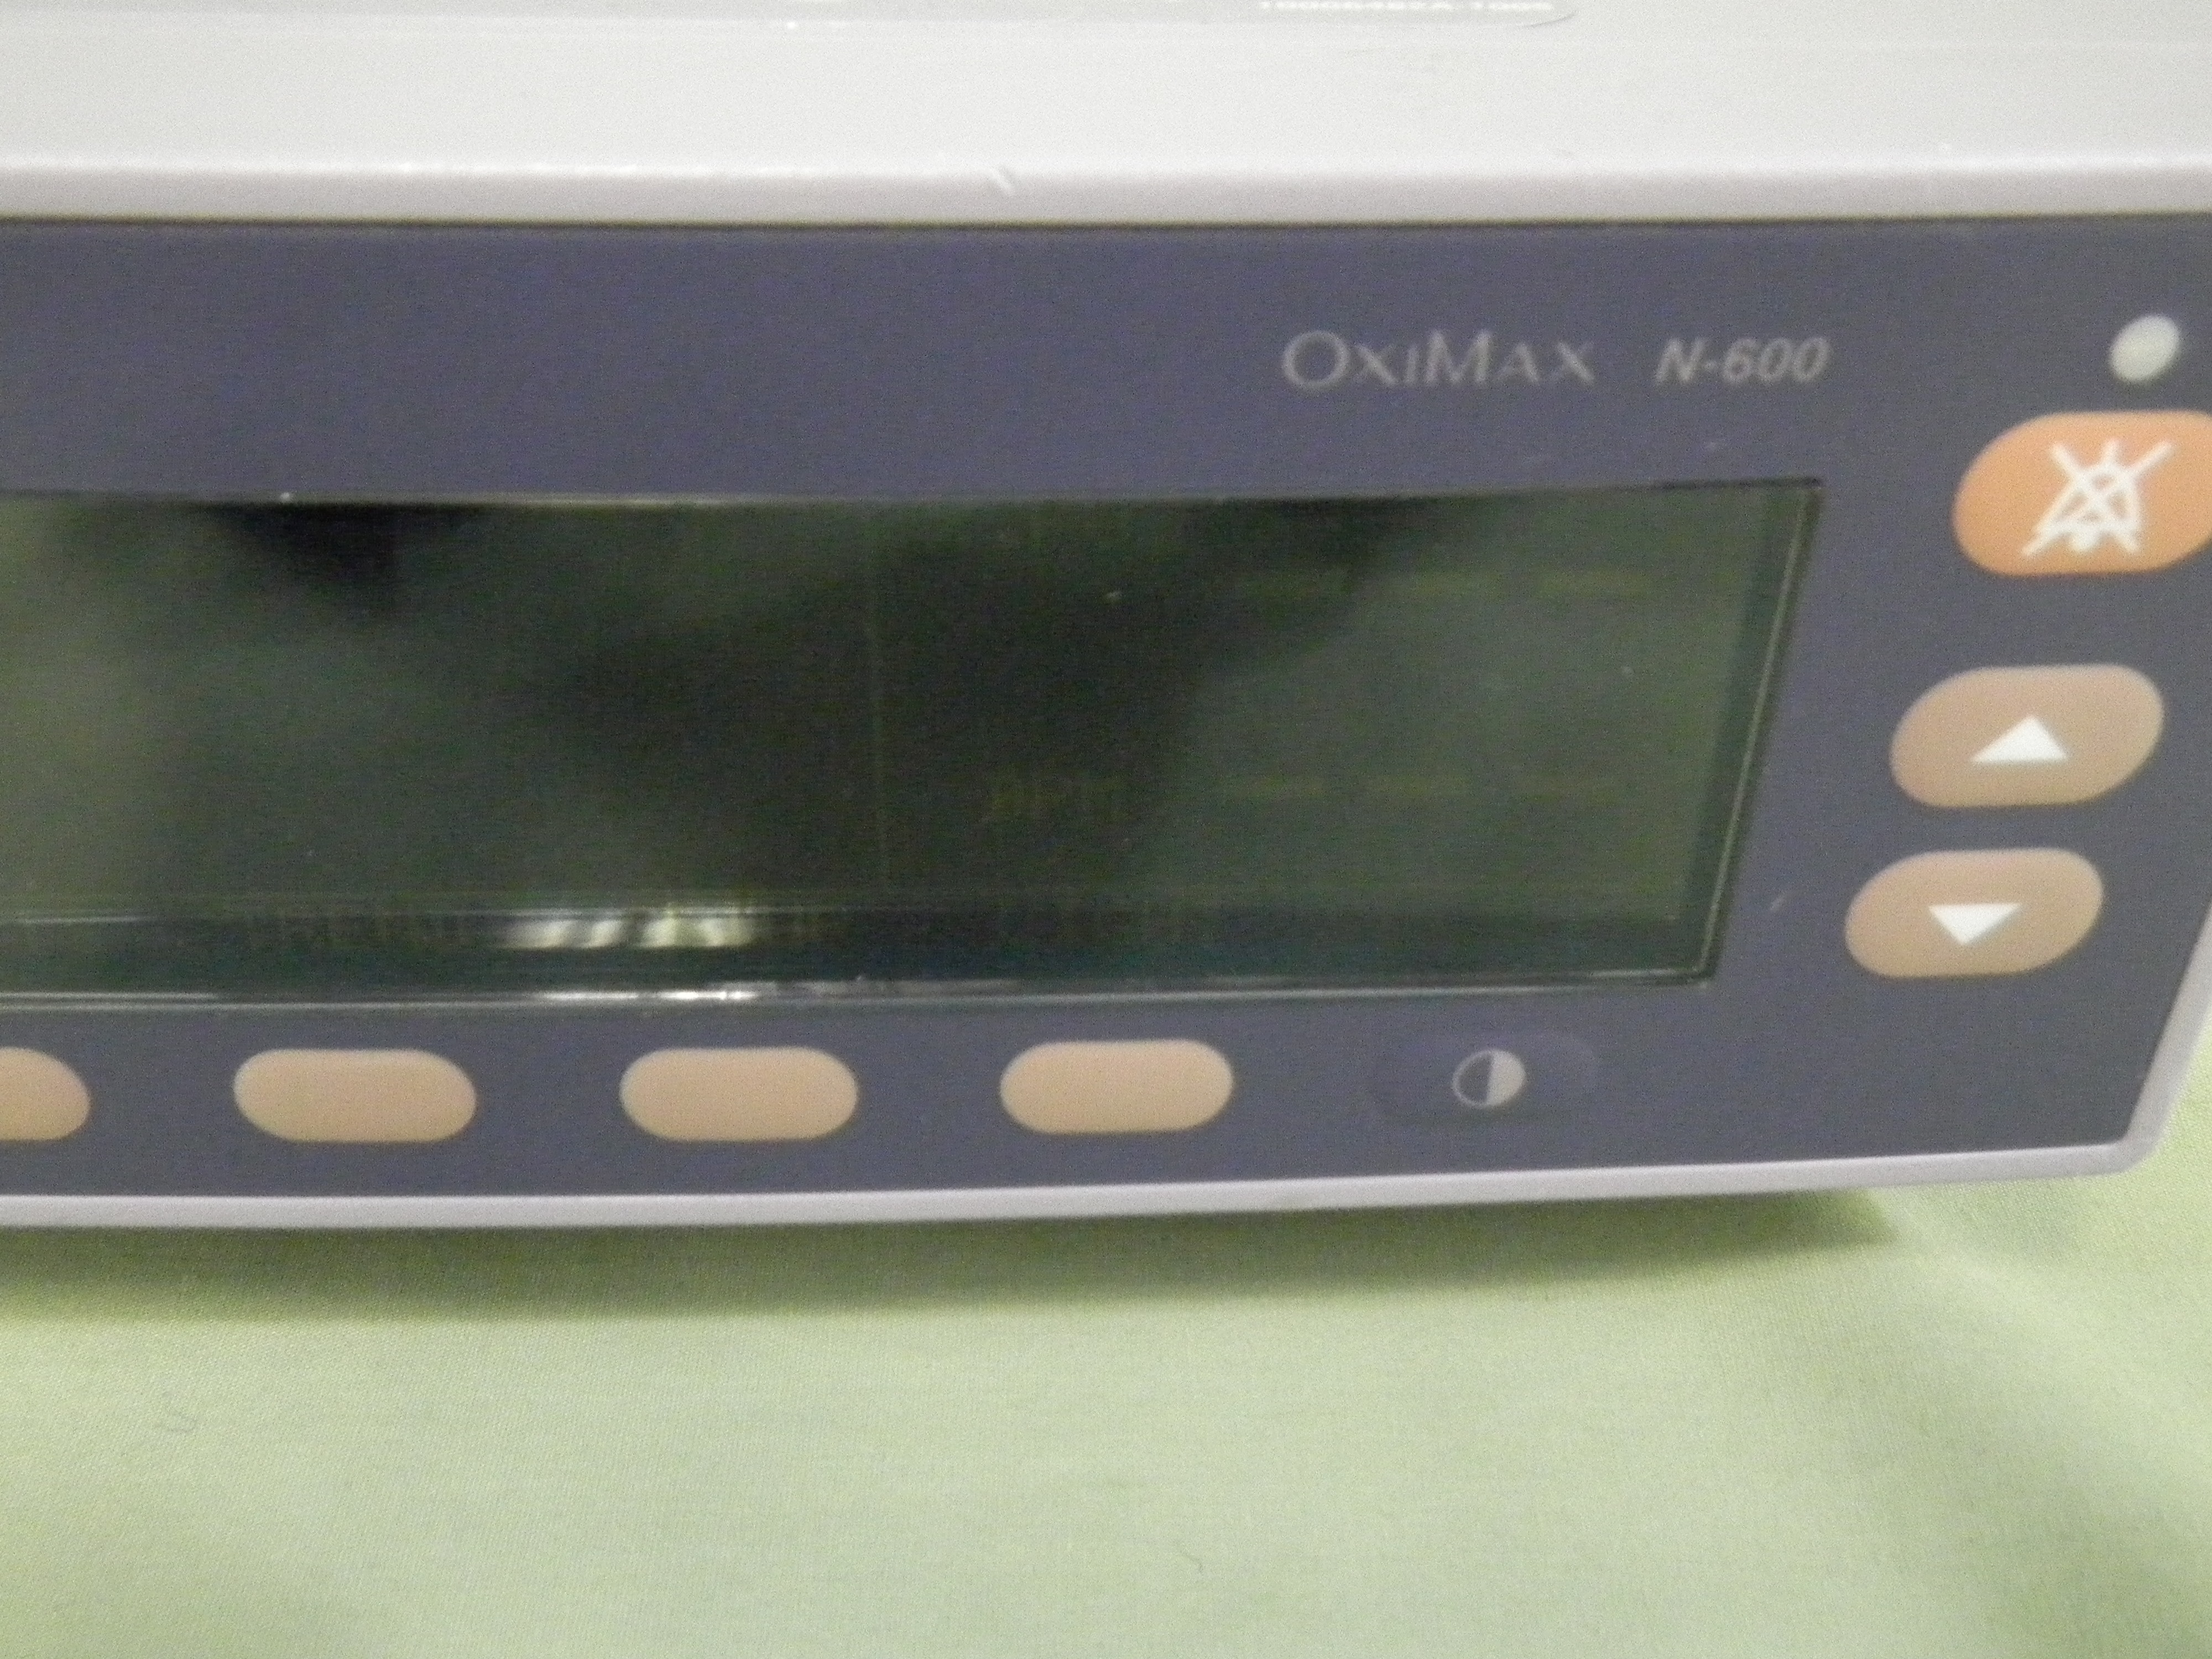 Nellcor OxiMax N-600